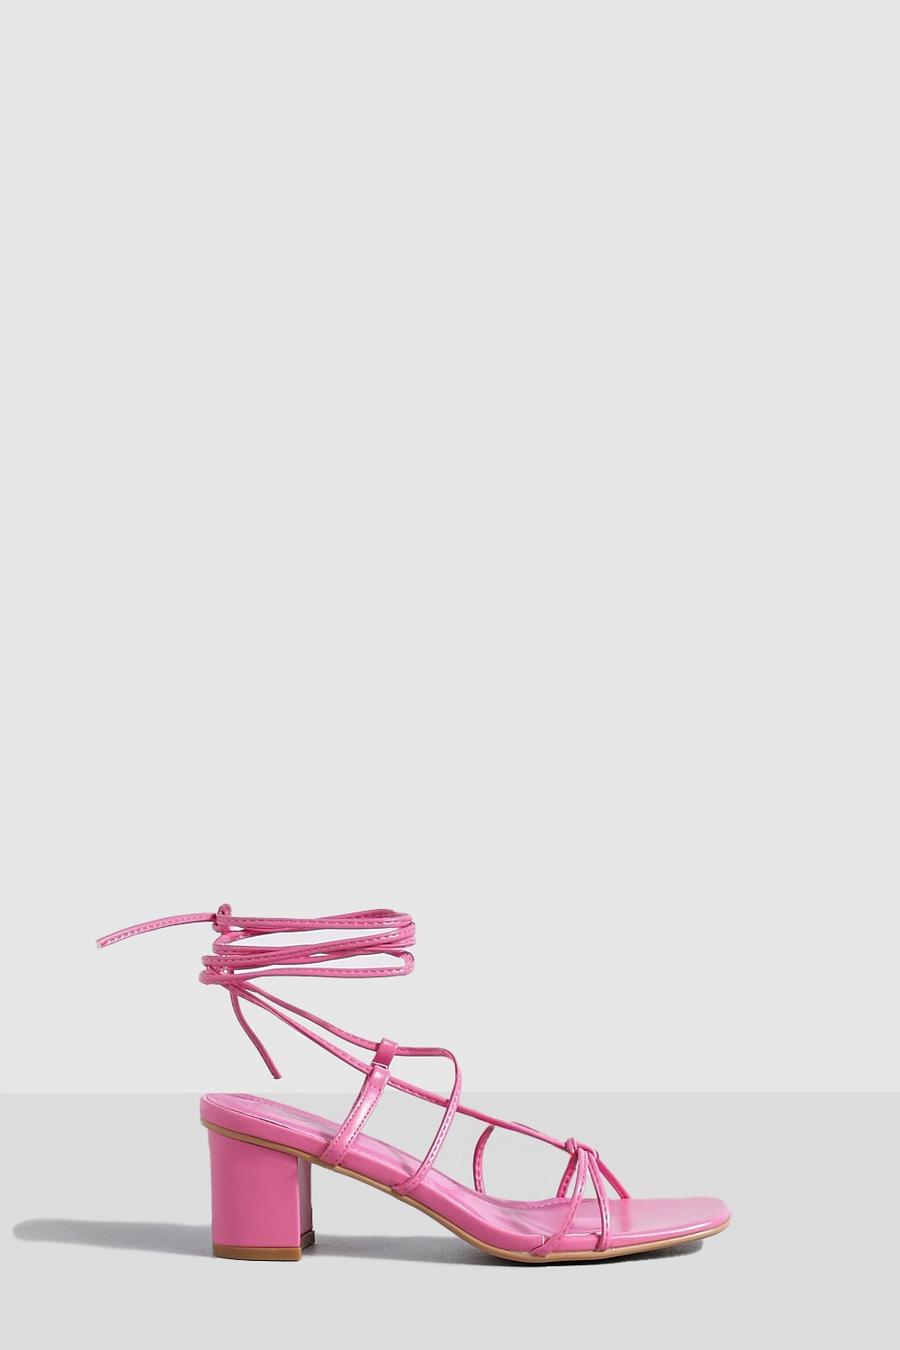 Scarpe con laccetti e tacco basso a blocco, Fuchsia rosa